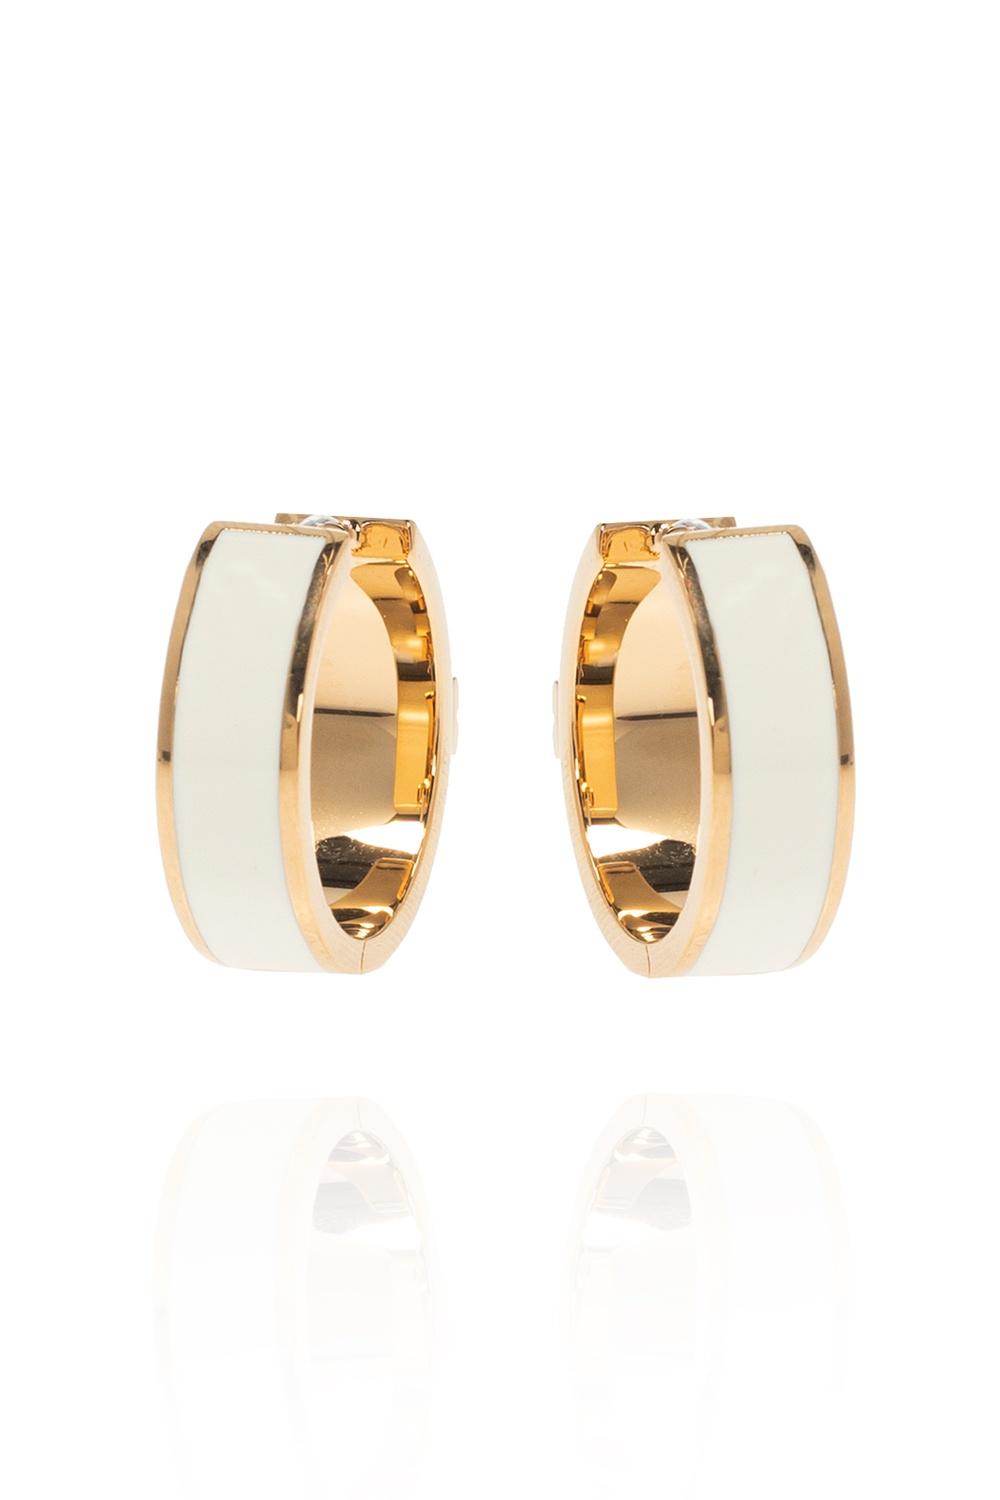 Tory Burch Kira Brass & Enamel Earrings in Gold (Metallic) | Lyst